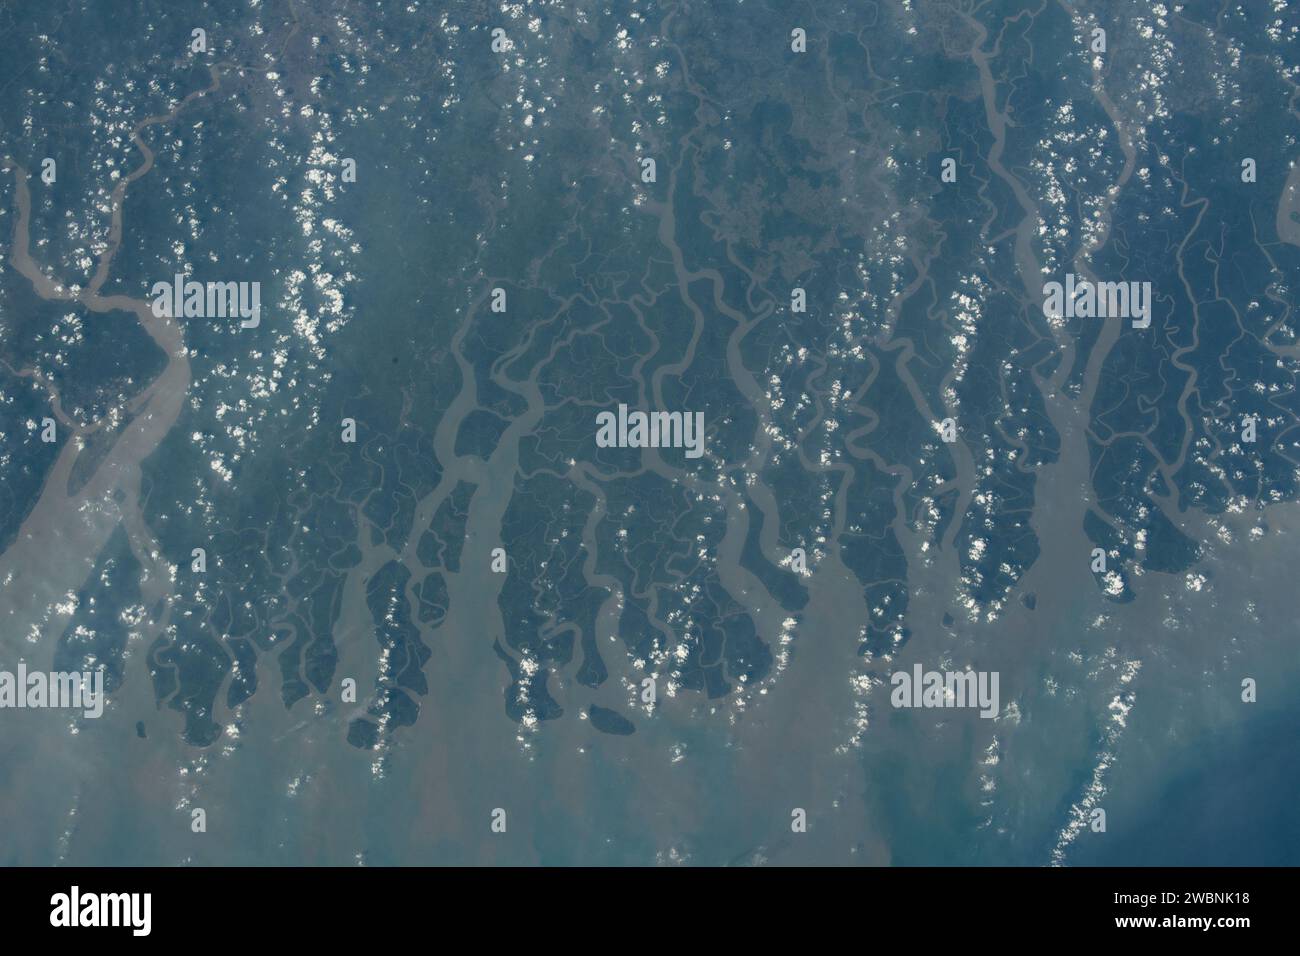 Iss070e005997 (19. Oktober 2023) --- Indien und Bangladesch Grenzen entlang des Sundarban National Park, einem Tigerreservat und Mangrovenwald, auf diesem Foto von der Internationalen Raumstation, die 257 Meilen über der Bucht von Bengalen umkreist. Stockfoto